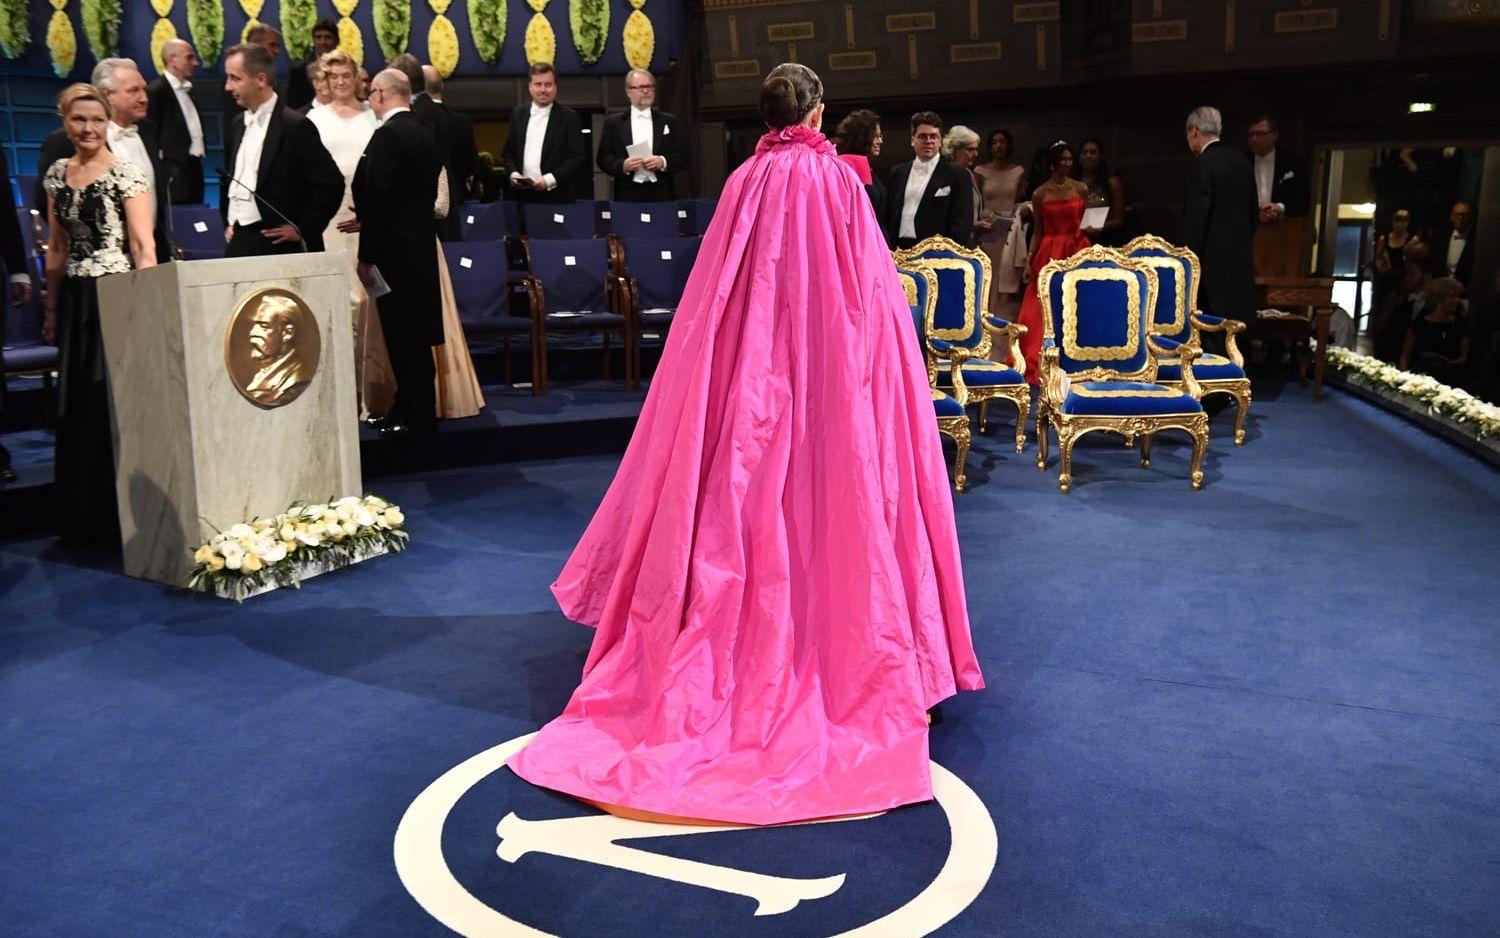 Sara Danius klänningar blev ofta omtalade. Här på Nobelprisutdelningen 2018, iförd en kreation av Pär Engshede.